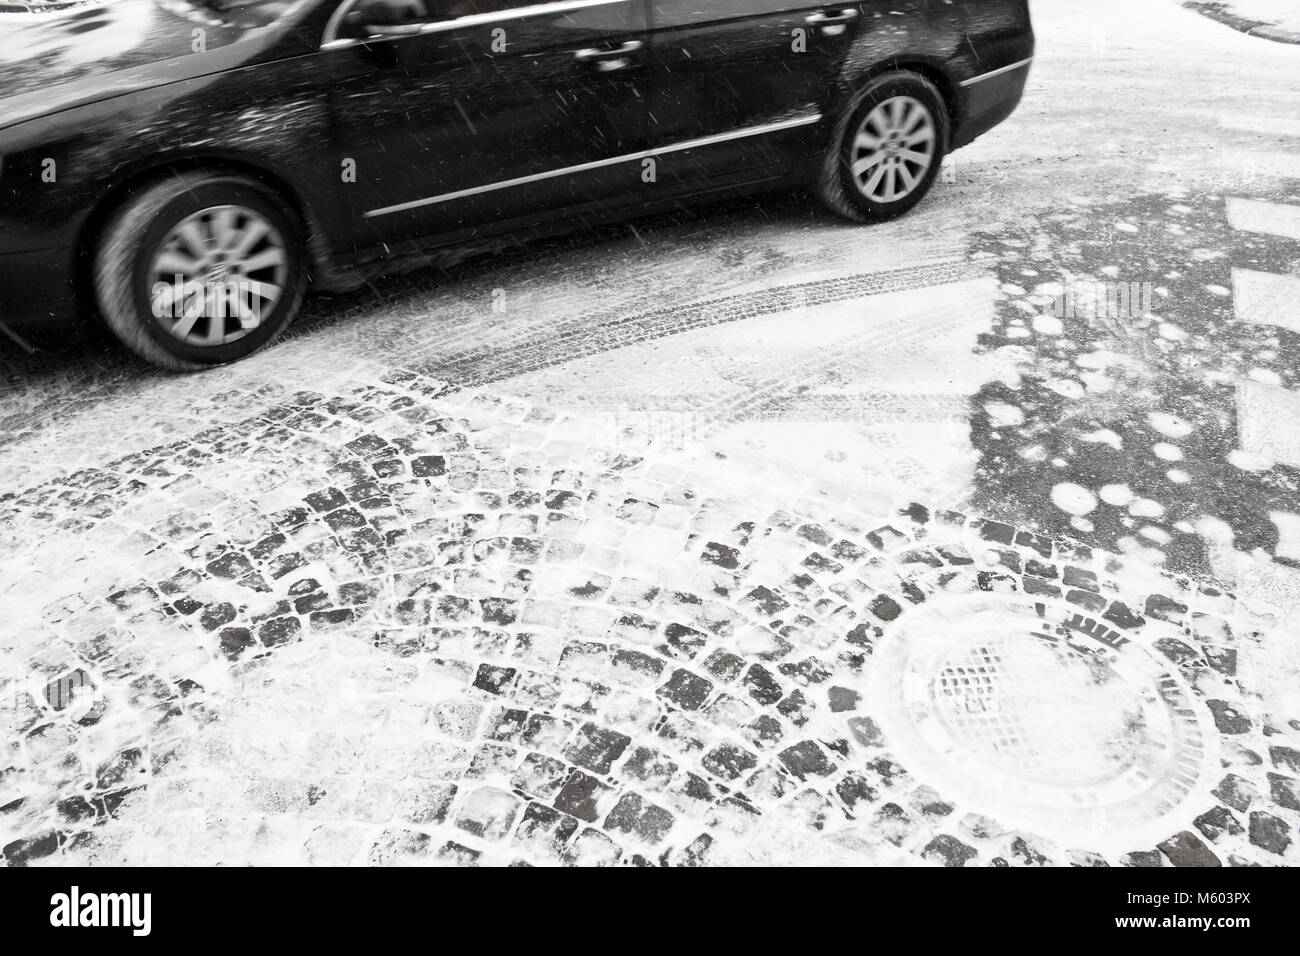 La guida auto in motion blur in strada innevata, dettaglio in bianco e nero Foto Stock